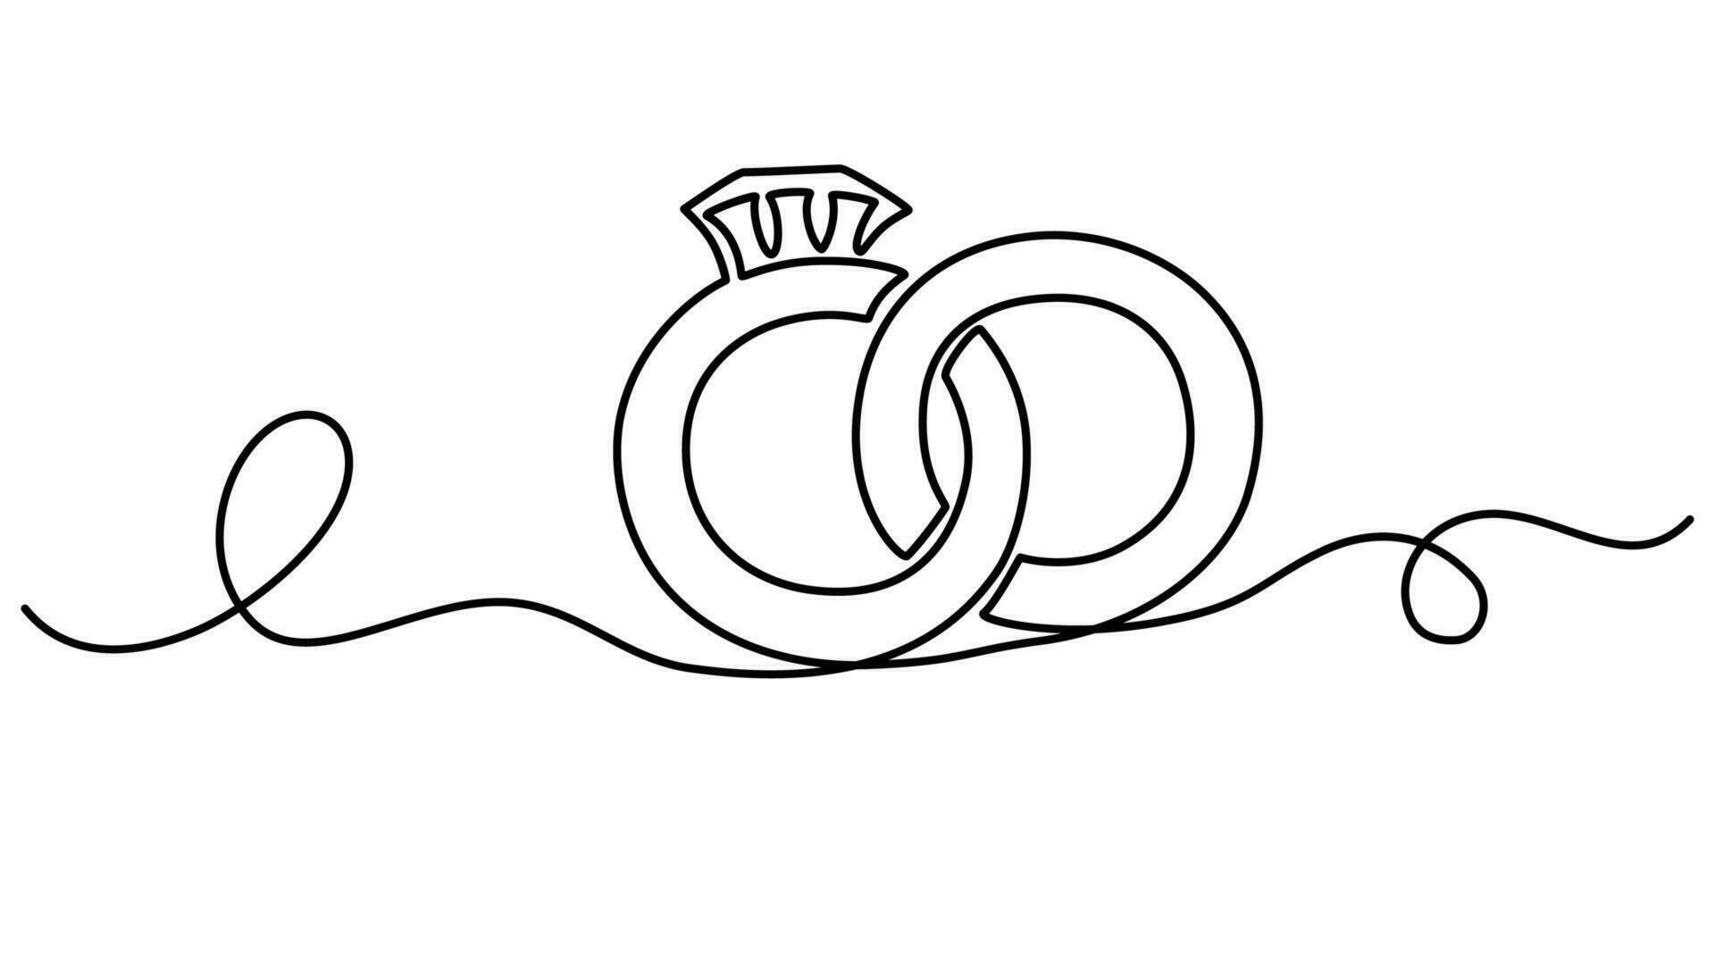 bröllop ringar ett kontinuerlig linje teckning. romantisk elegans begrepp och symbol förslag engagemang och kärlek äktenskap inbjudan i enkel linjär stil. redigerbar stroke. vektor illustration